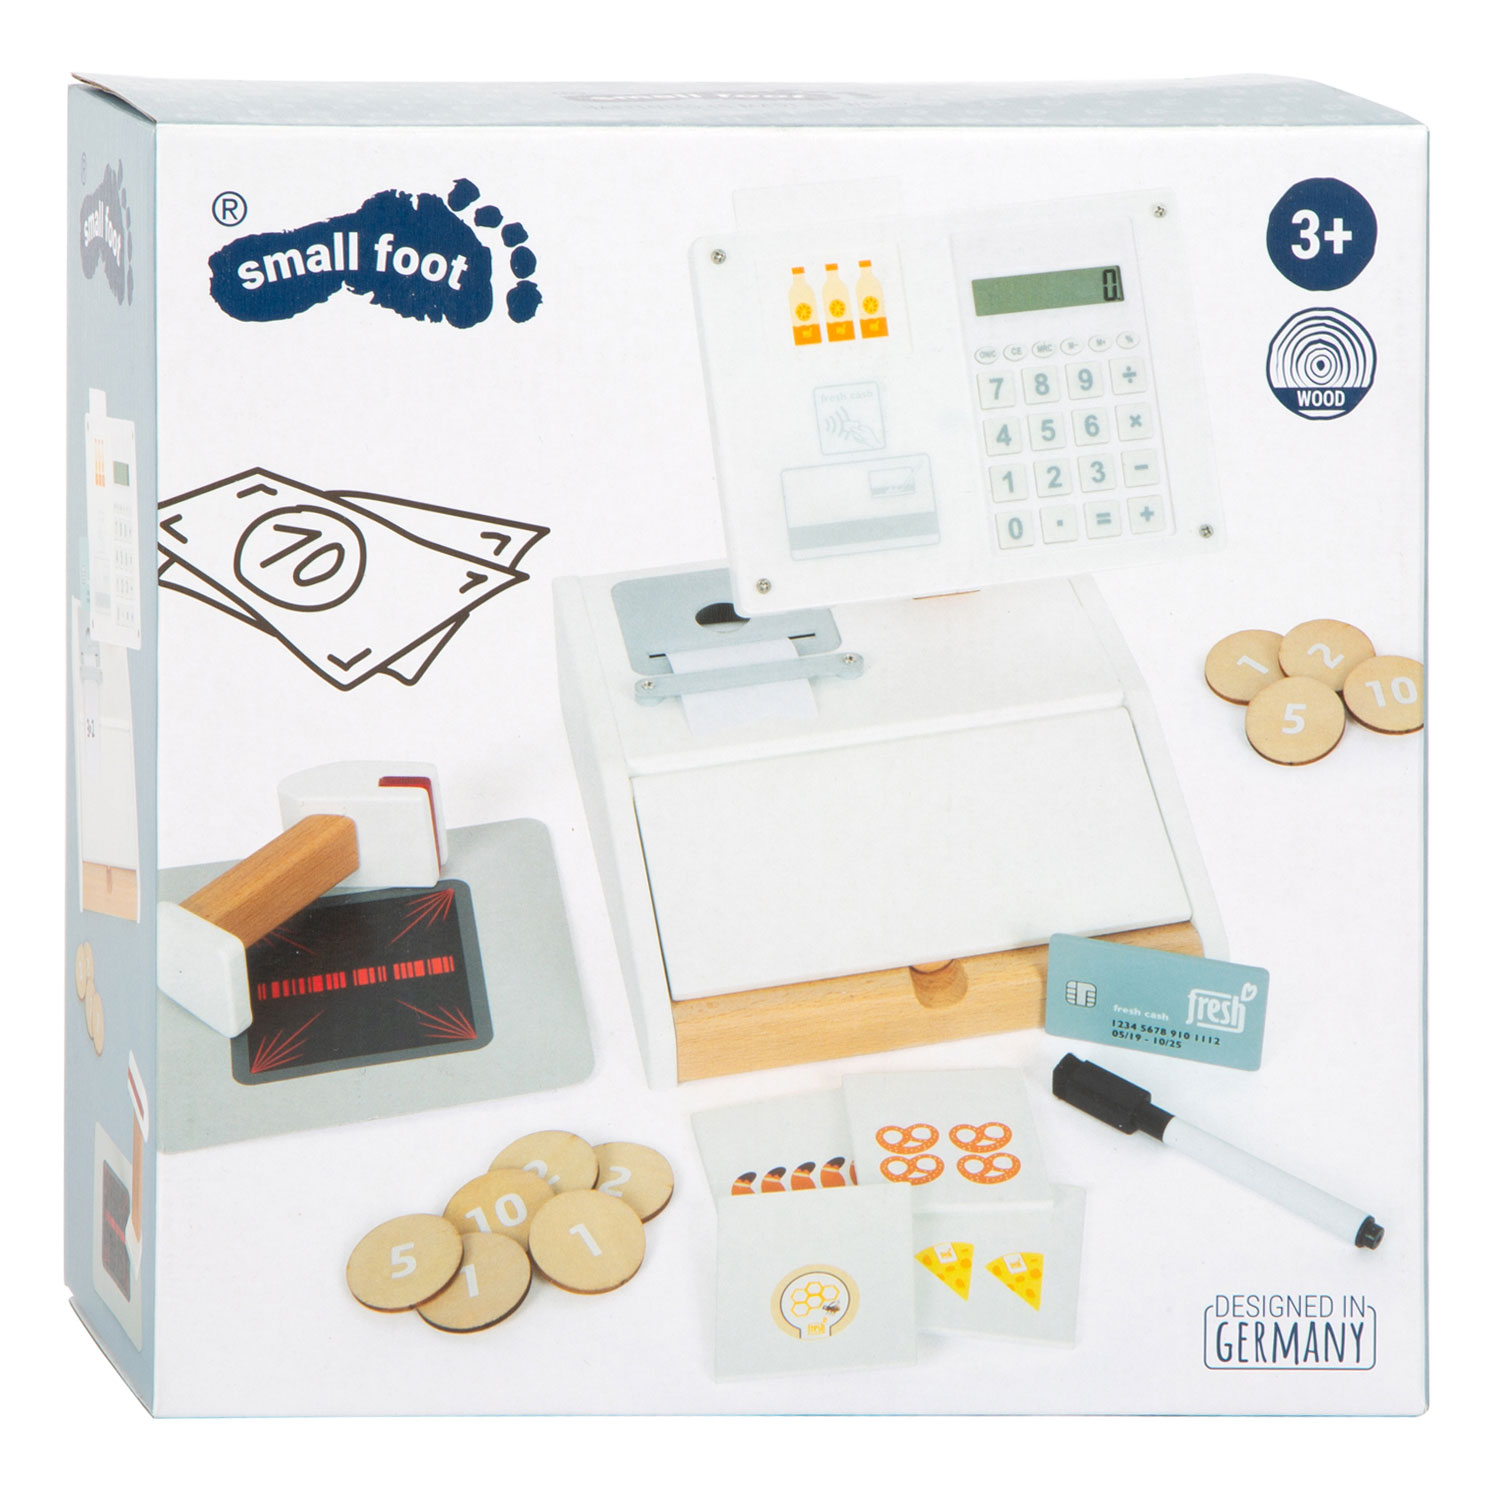 Caisse enregistreuse jeu d'argent fictif en tiroir-caisse 24 pièces -  Billets et